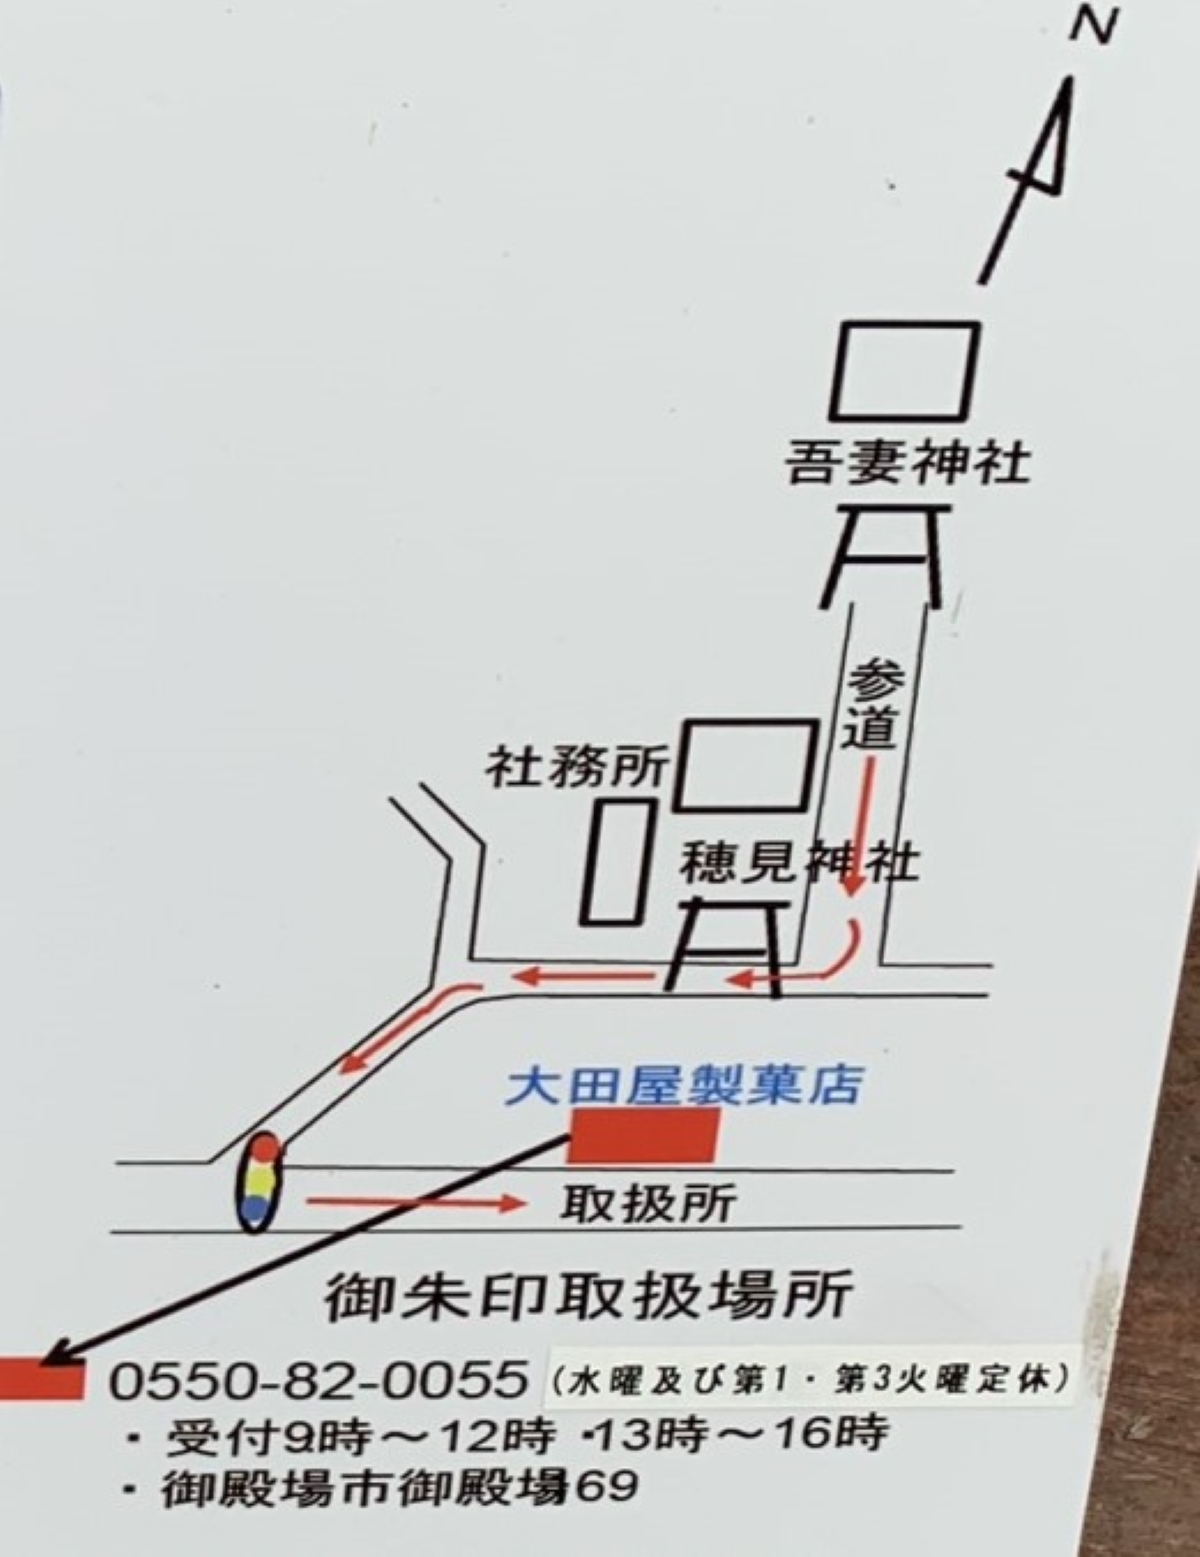 お賽銭箱に記されていた太田屋製菓店さんの地図